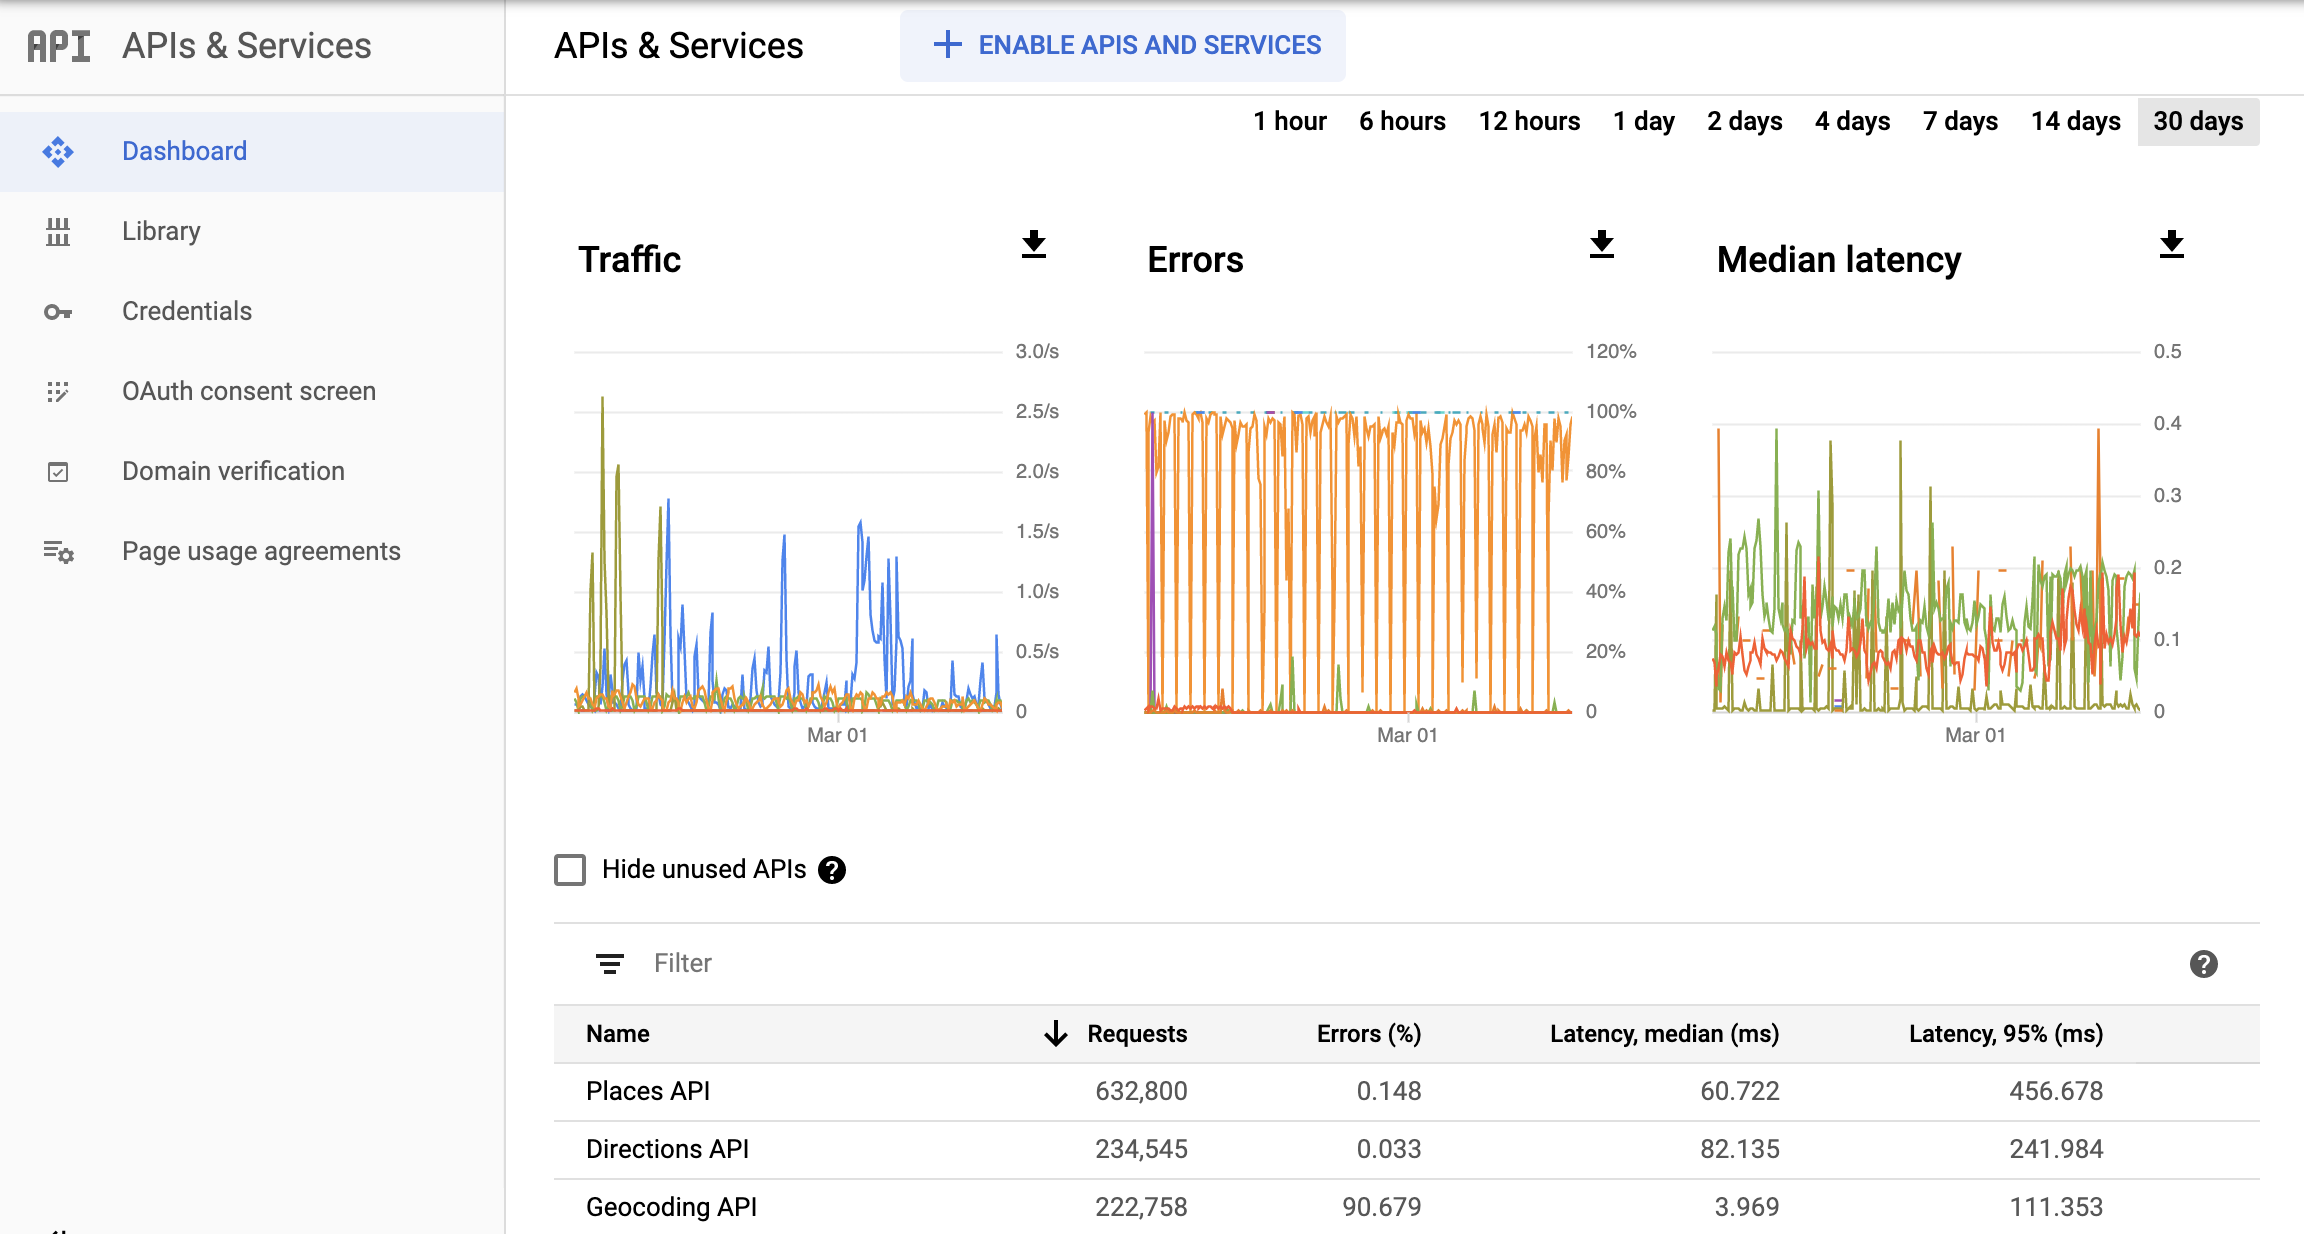 Zrzut ekranu strony Monitoring API w Google Cloud Console z panelem raportów interfejsów API i usług. Widać na nim oddzielne wykresy ruchu, błędów i mediany czasu oczekiwania. Te wykresy mogą pokazywać dane z okresu od 1 godziny do 30 dni.